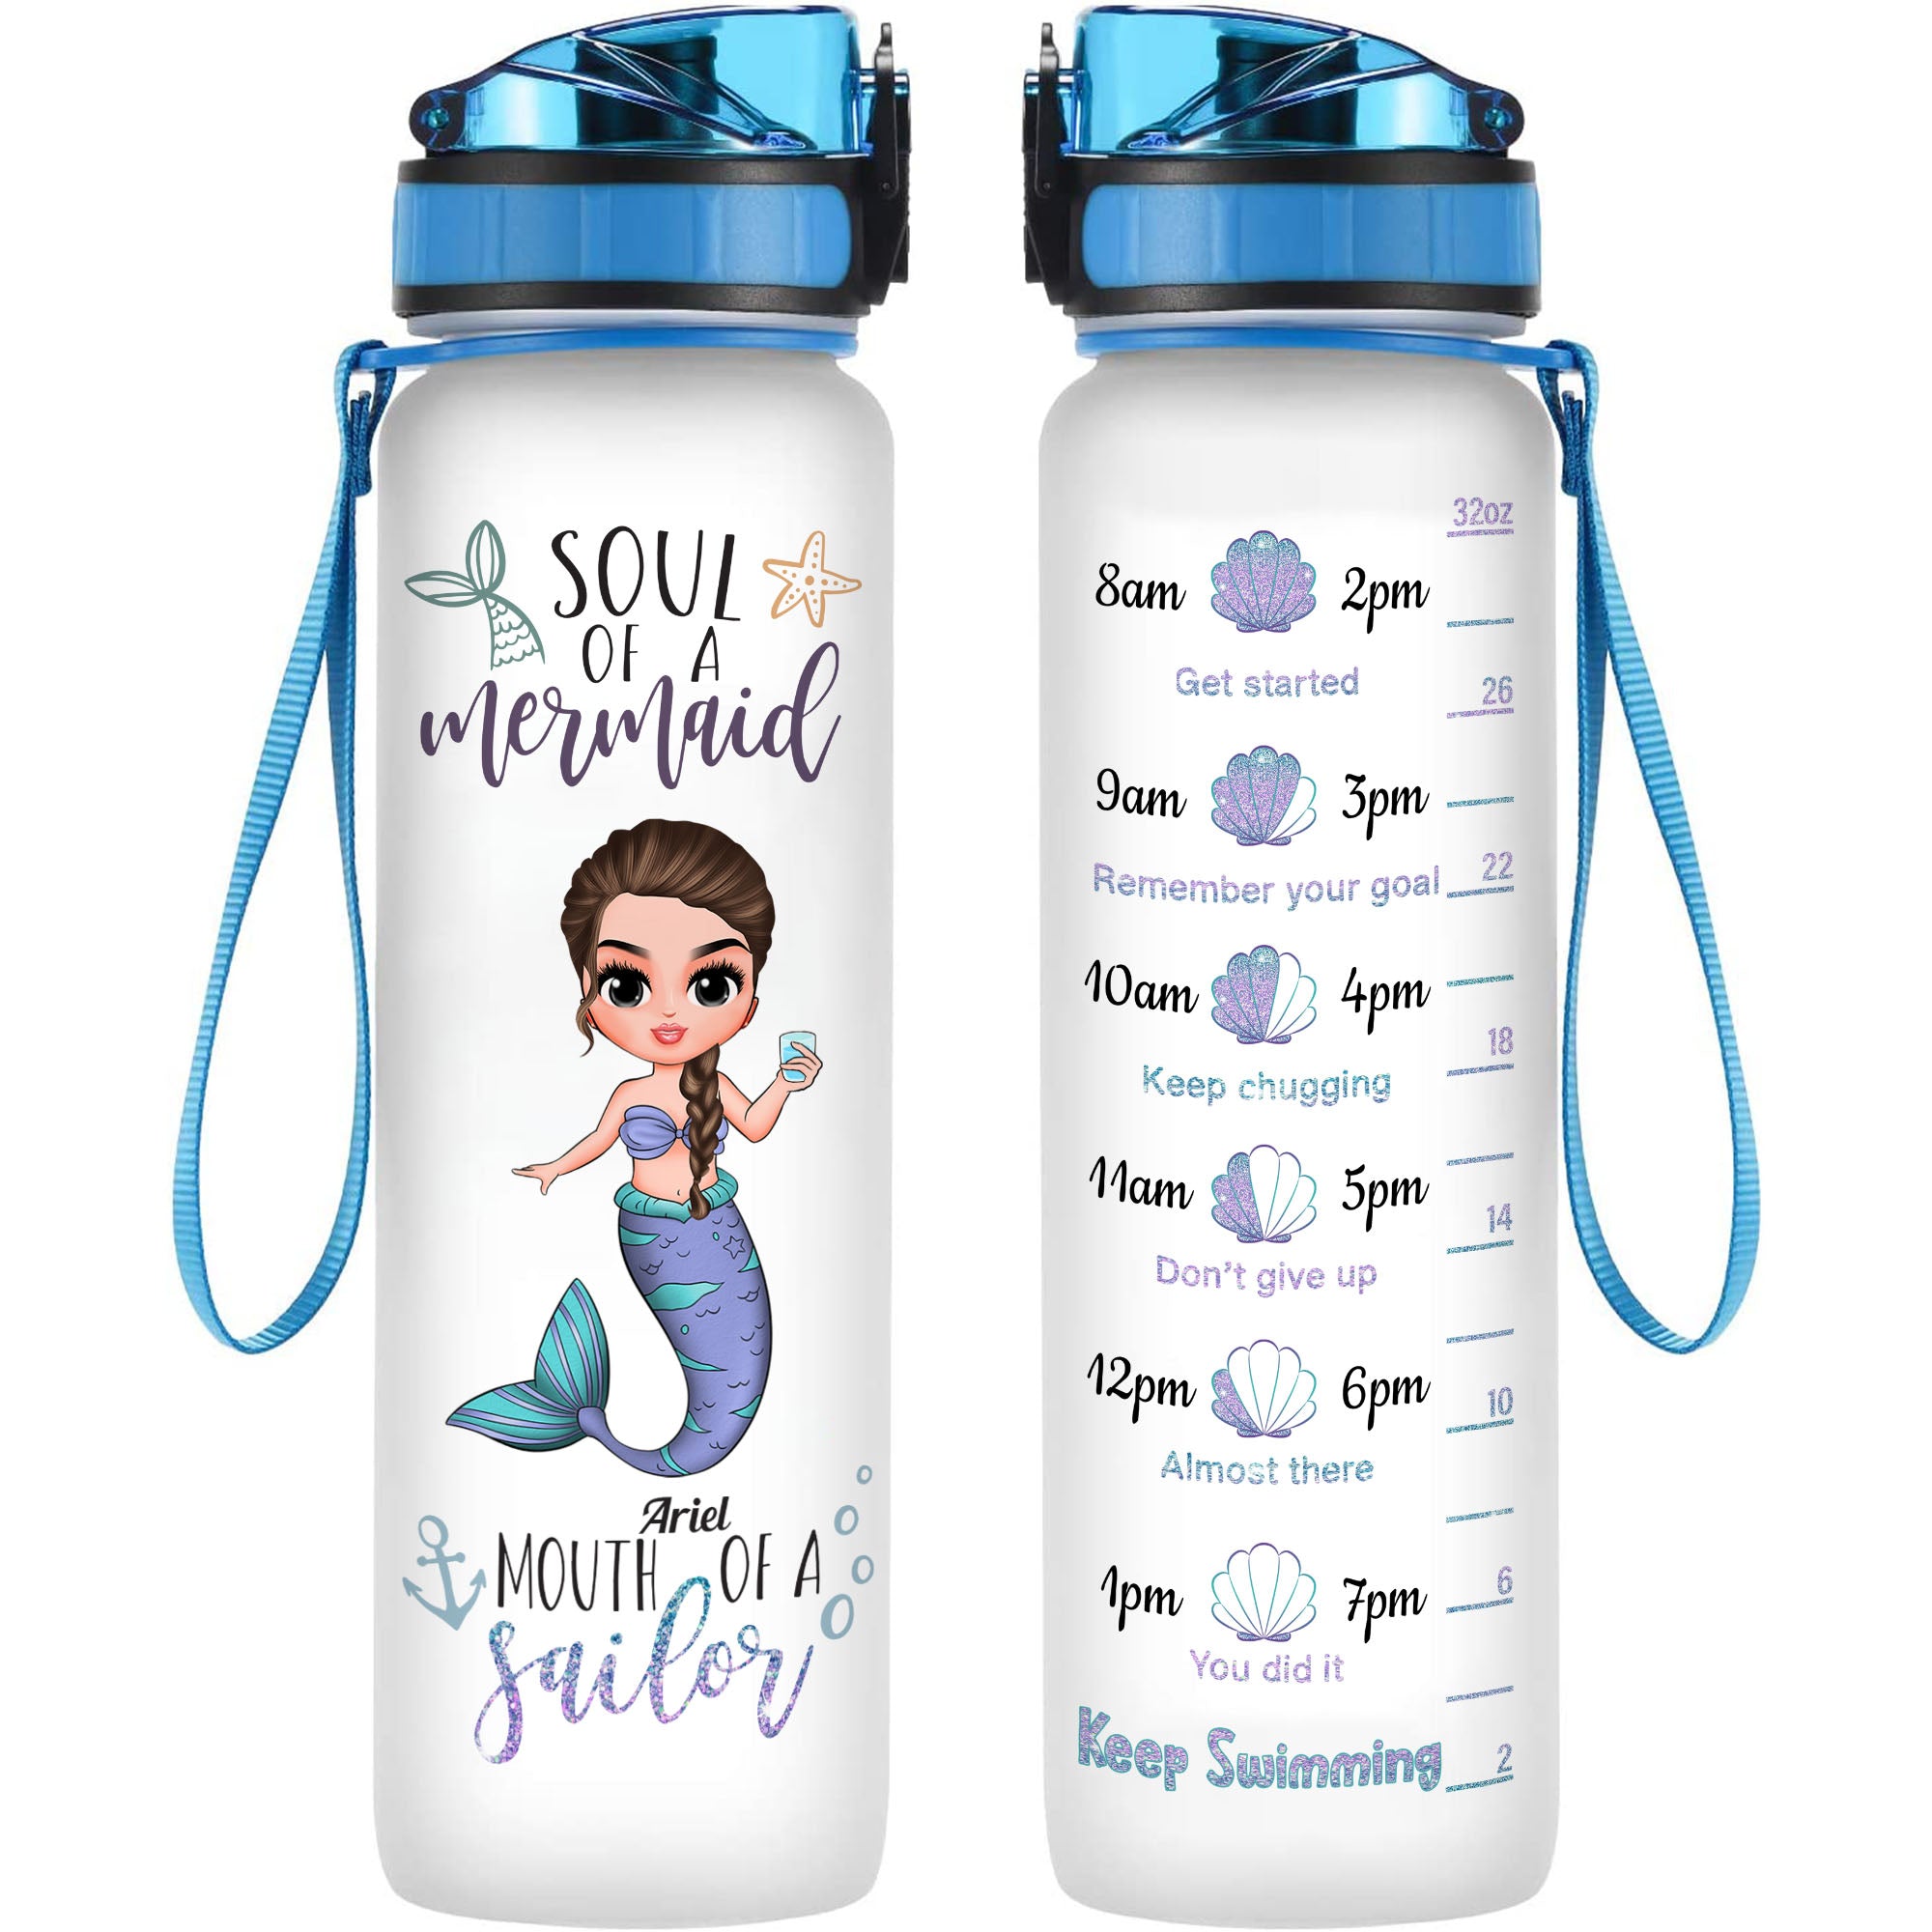 Personalized kids water bottle, mermaid